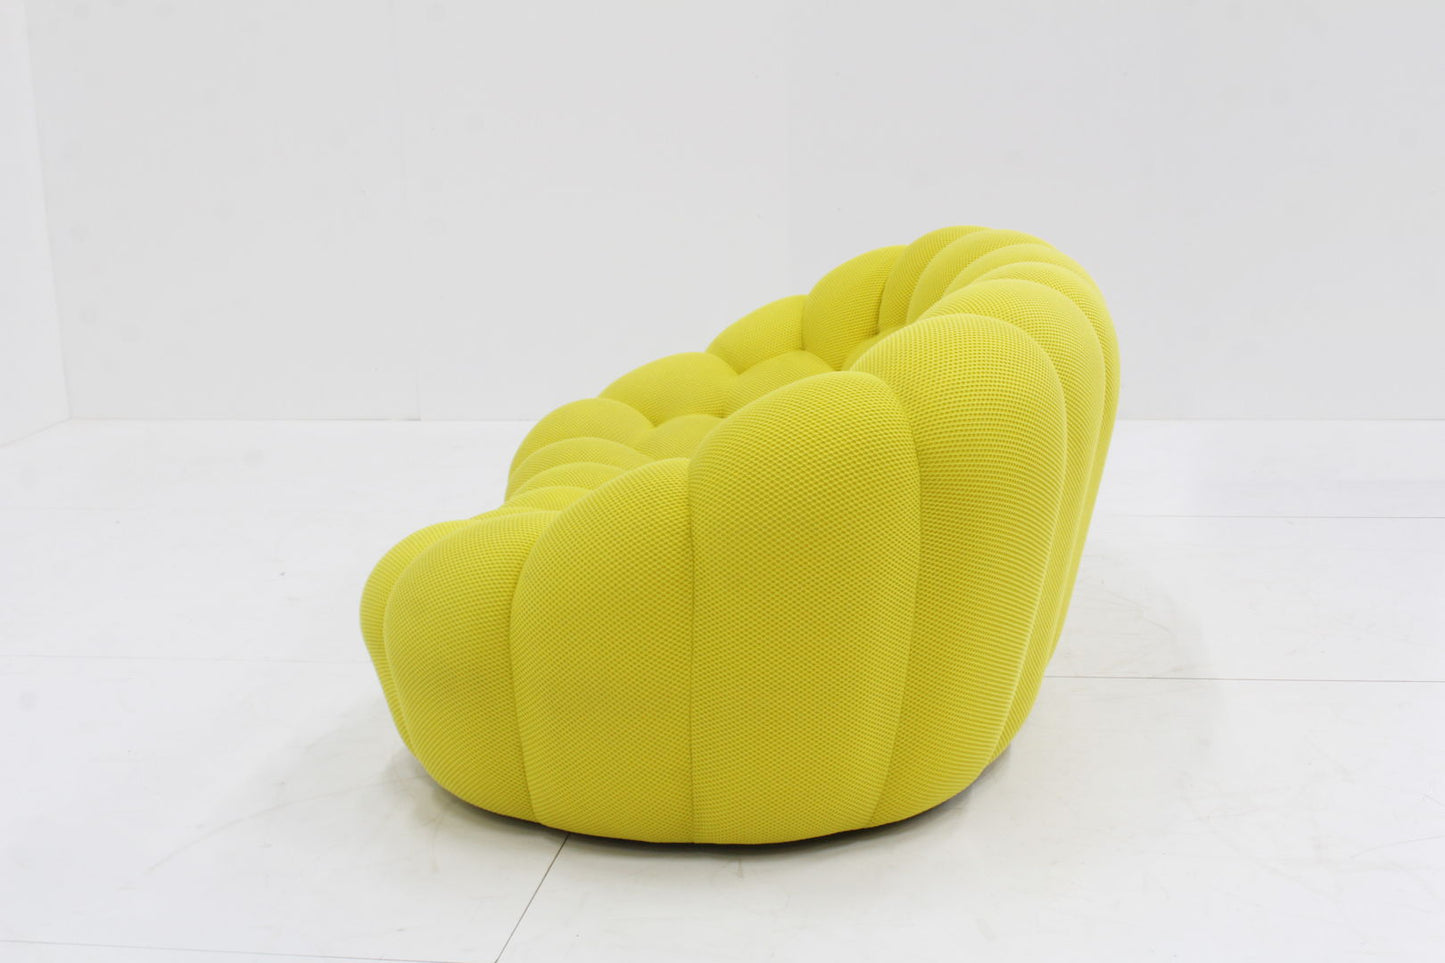 Roche Bobois curved bubble sofa